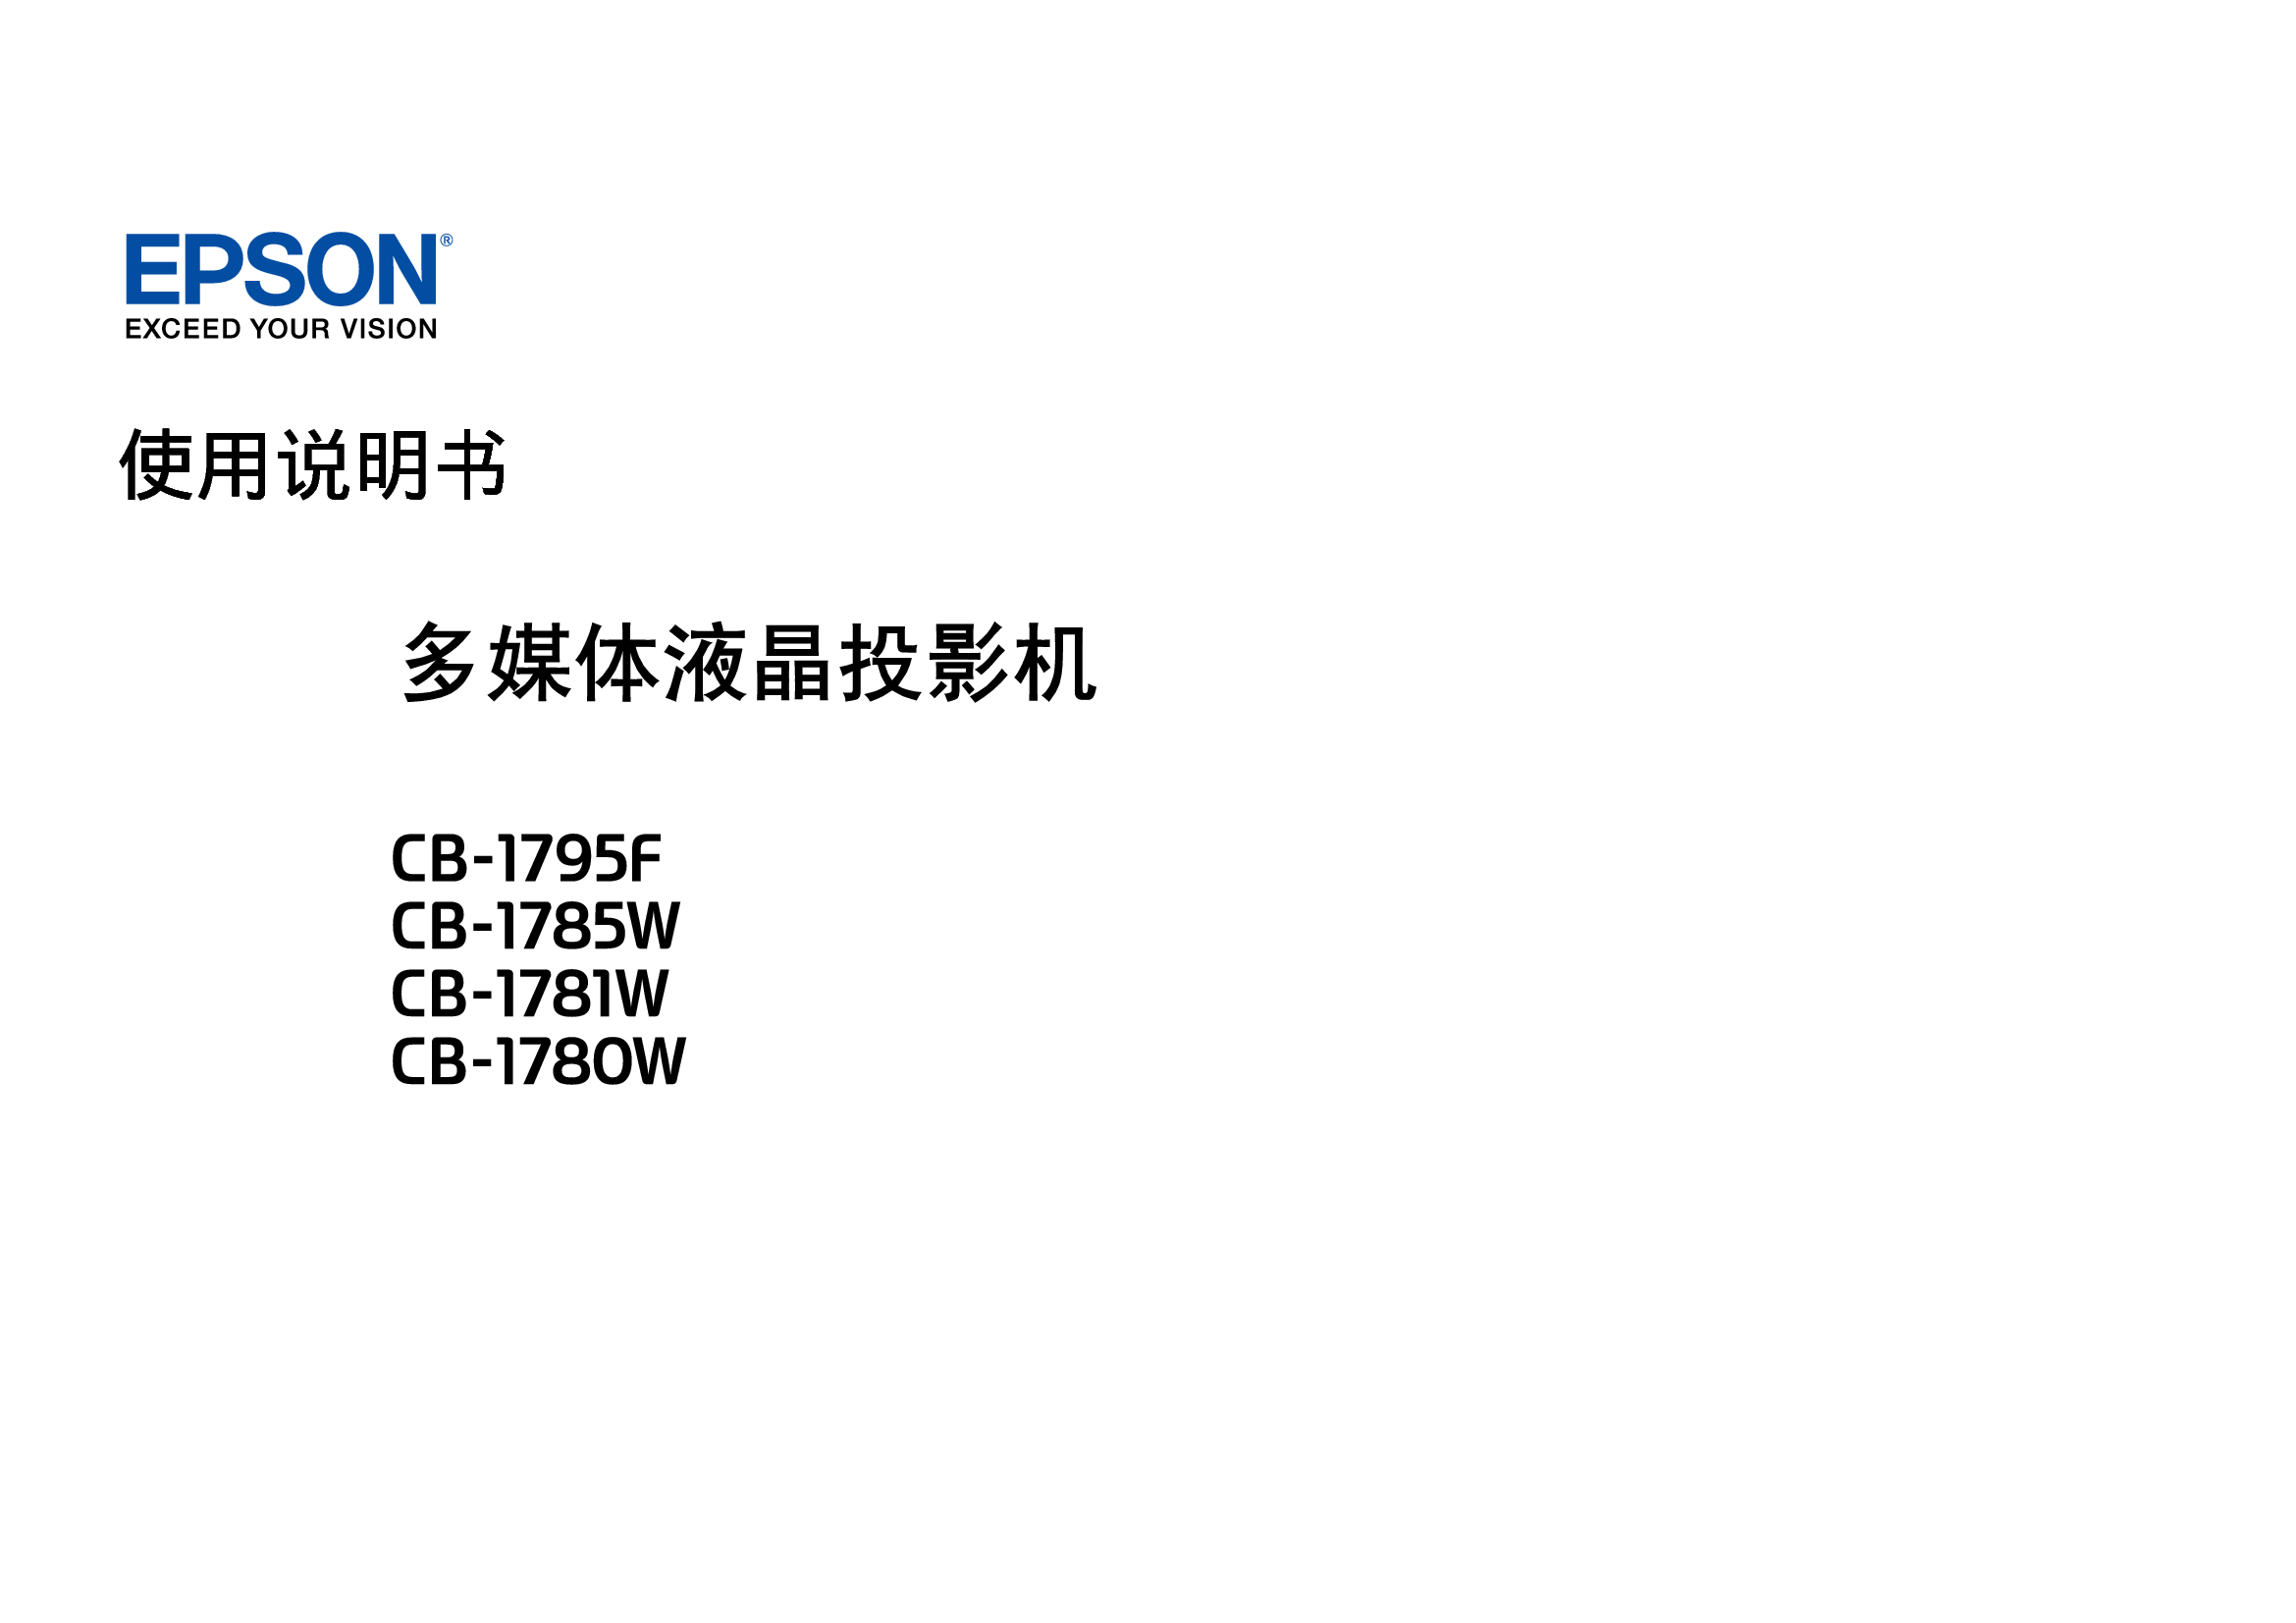 爱普生 Epson CB-1780W, CB-1795F 使用说明书 封面